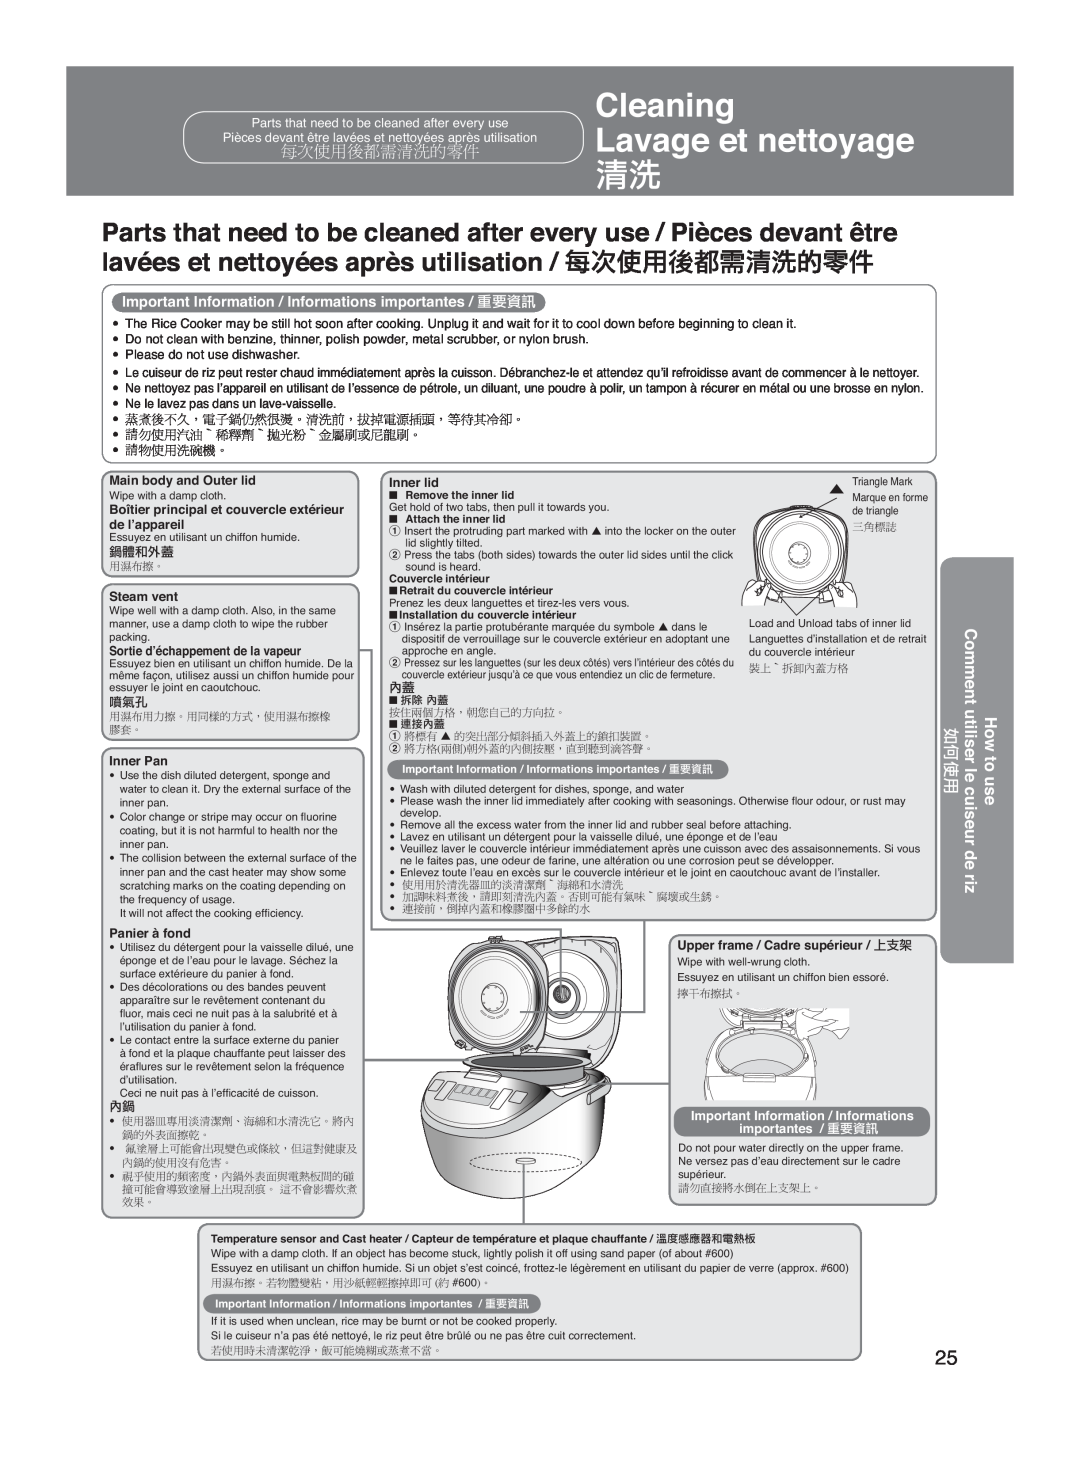 Panasonic SR-DG182 Cleaning, Lavage et nettoyage, How to Comment utiliserle, de riz, cuiseur, w w w, Steam vent, Inner Pan 